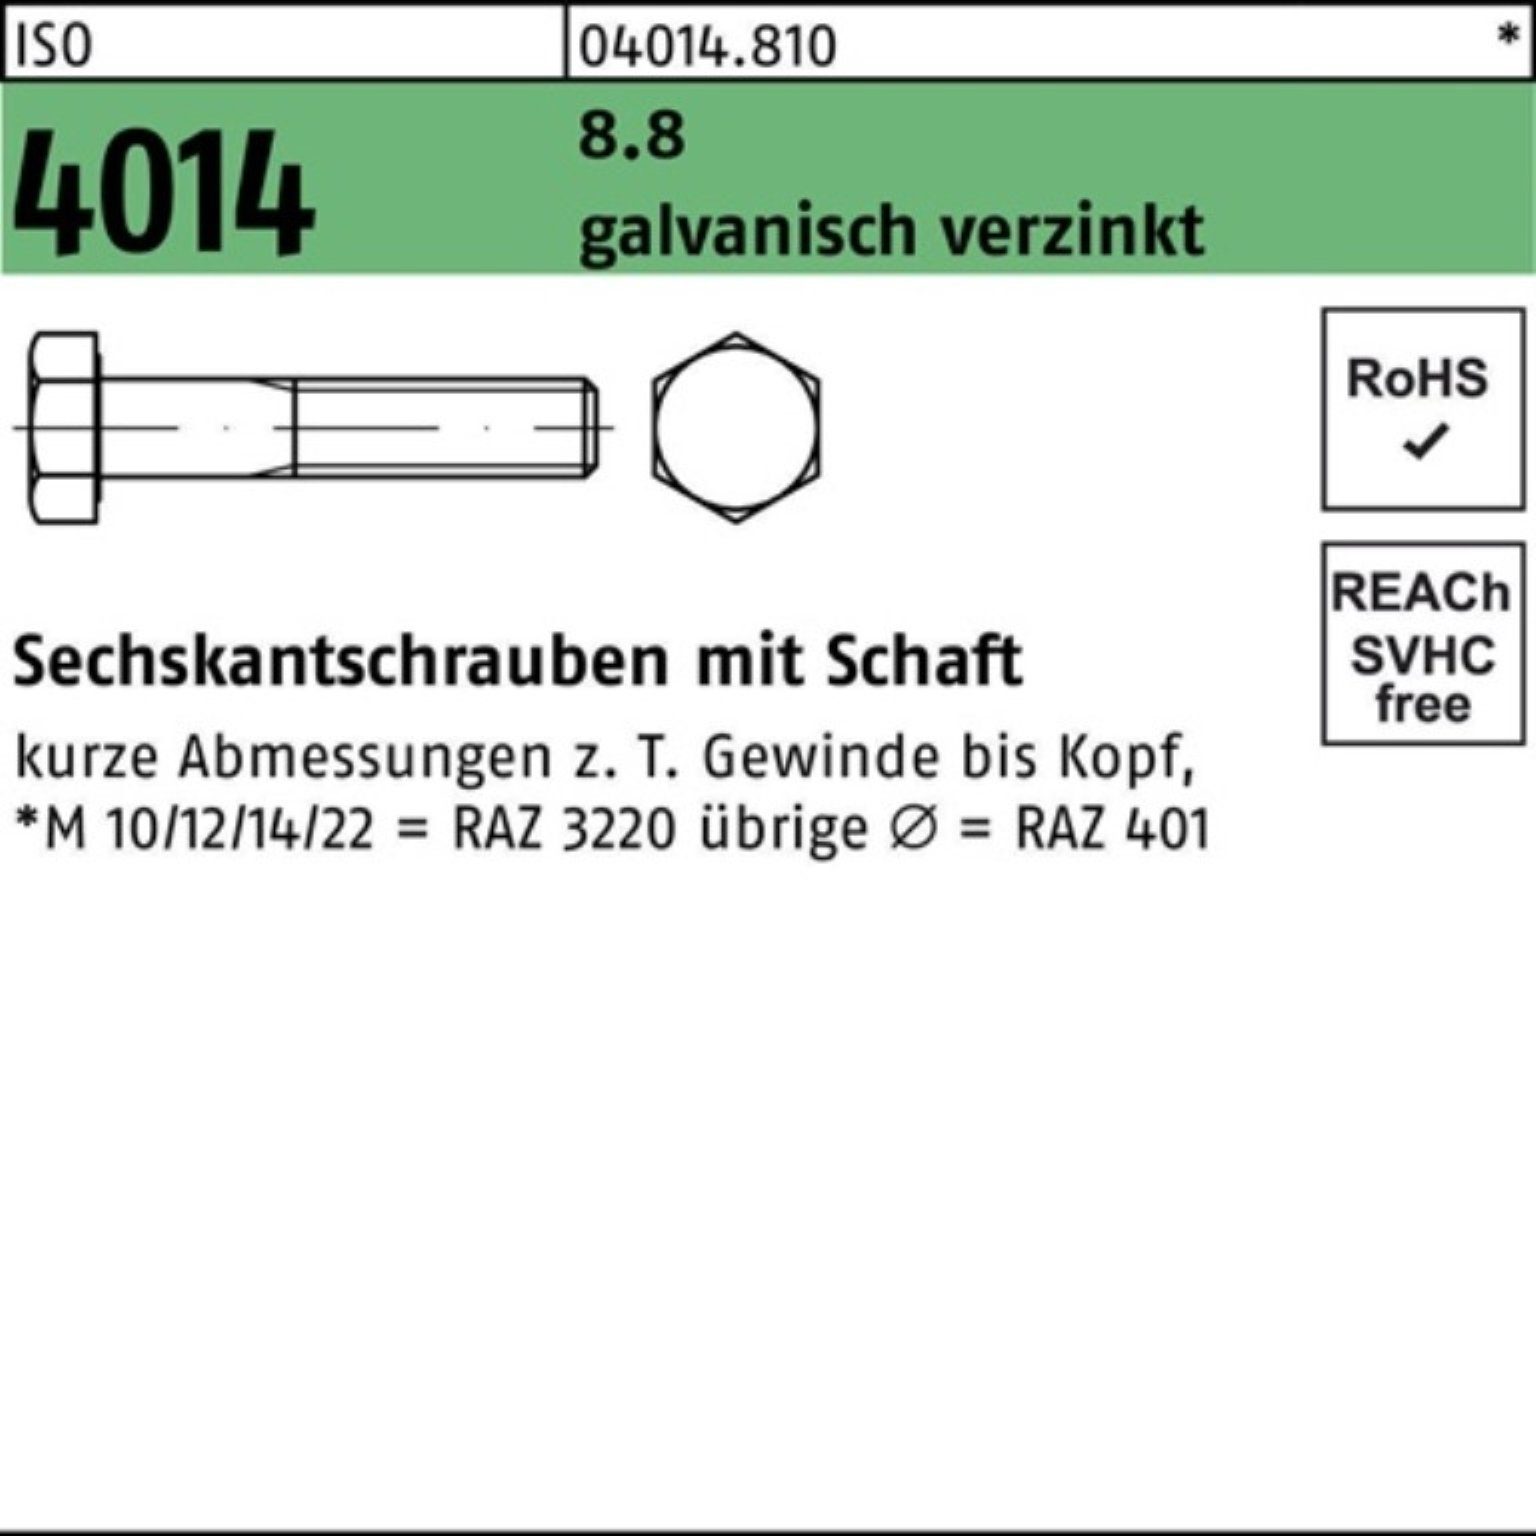 Sechskantschraube Bufab ISO 4014 100er 8.8 M10x Sechskantschraube 5 Pack 120 galv.verz. Schaft